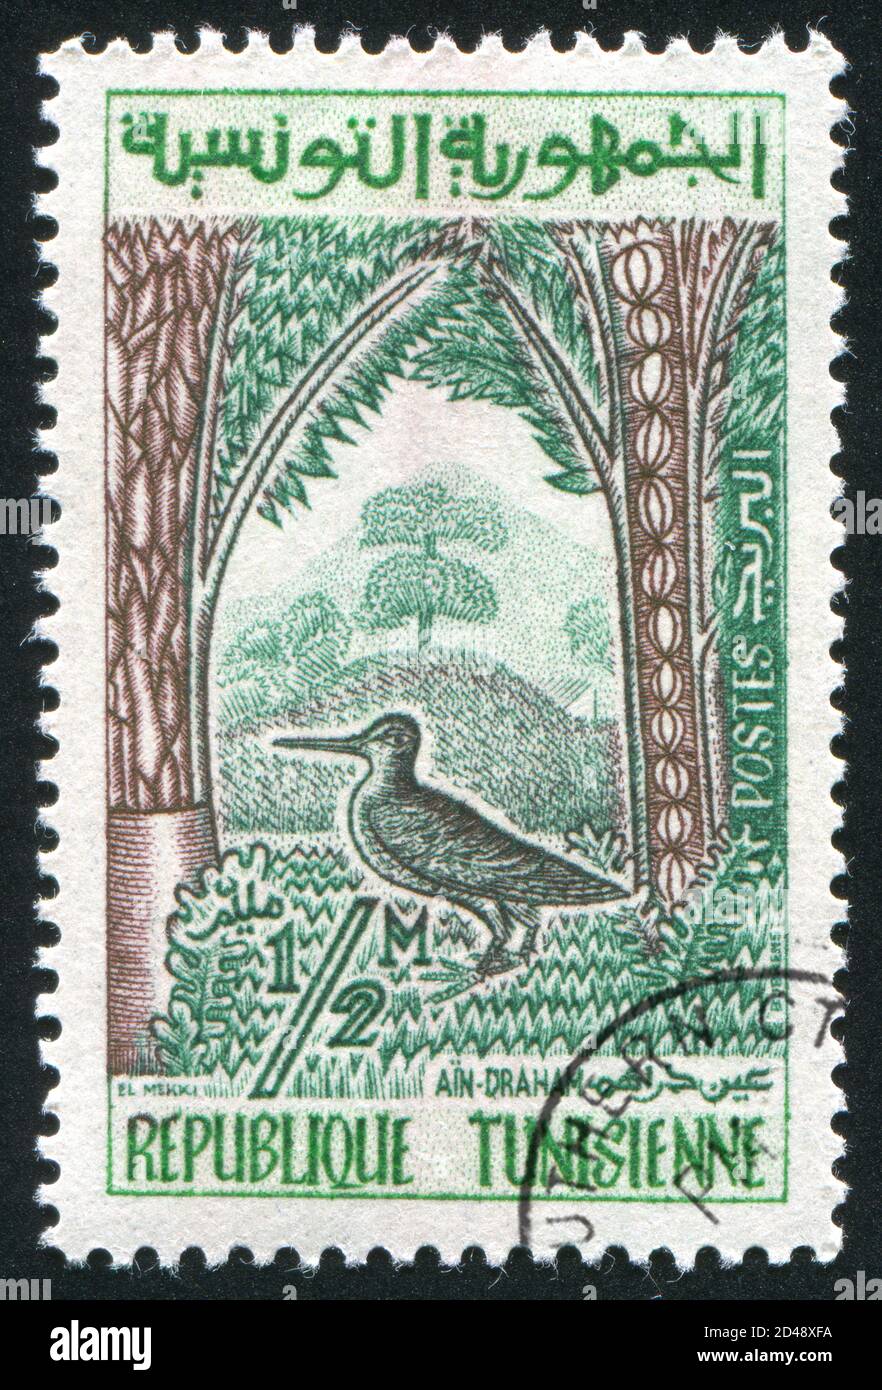 TUNISIE - VERS 1960: Timbre imprimé par la Tunisie, montre Woodcock dans la forêt d'Ain-Draham, vers 1960 Banque D'Images